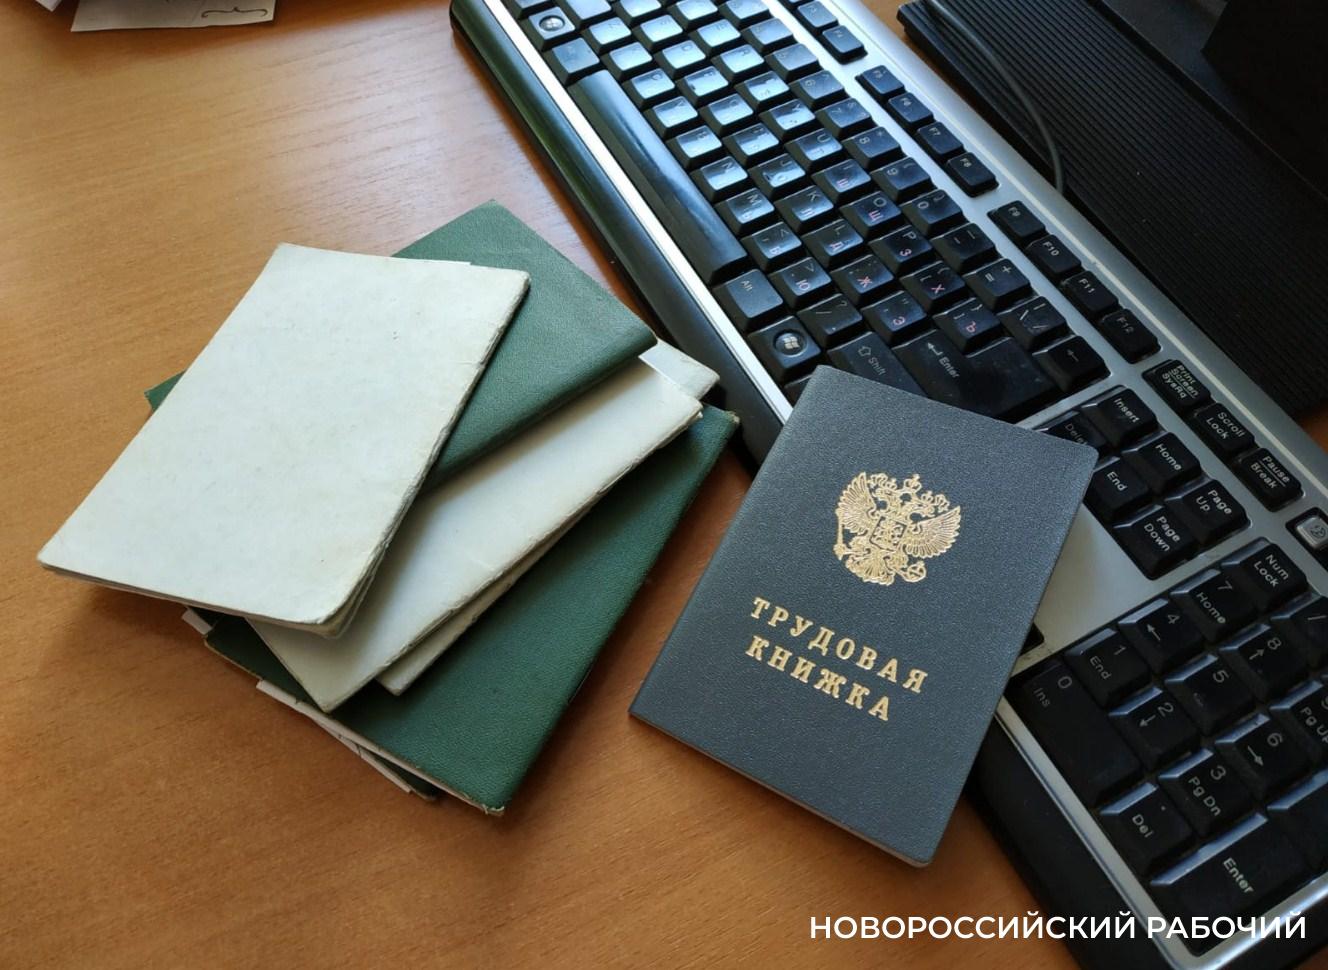 В Новороссийске нехватка докеров. Зарплата в 47,5 тысячи рублей привлекает не всех